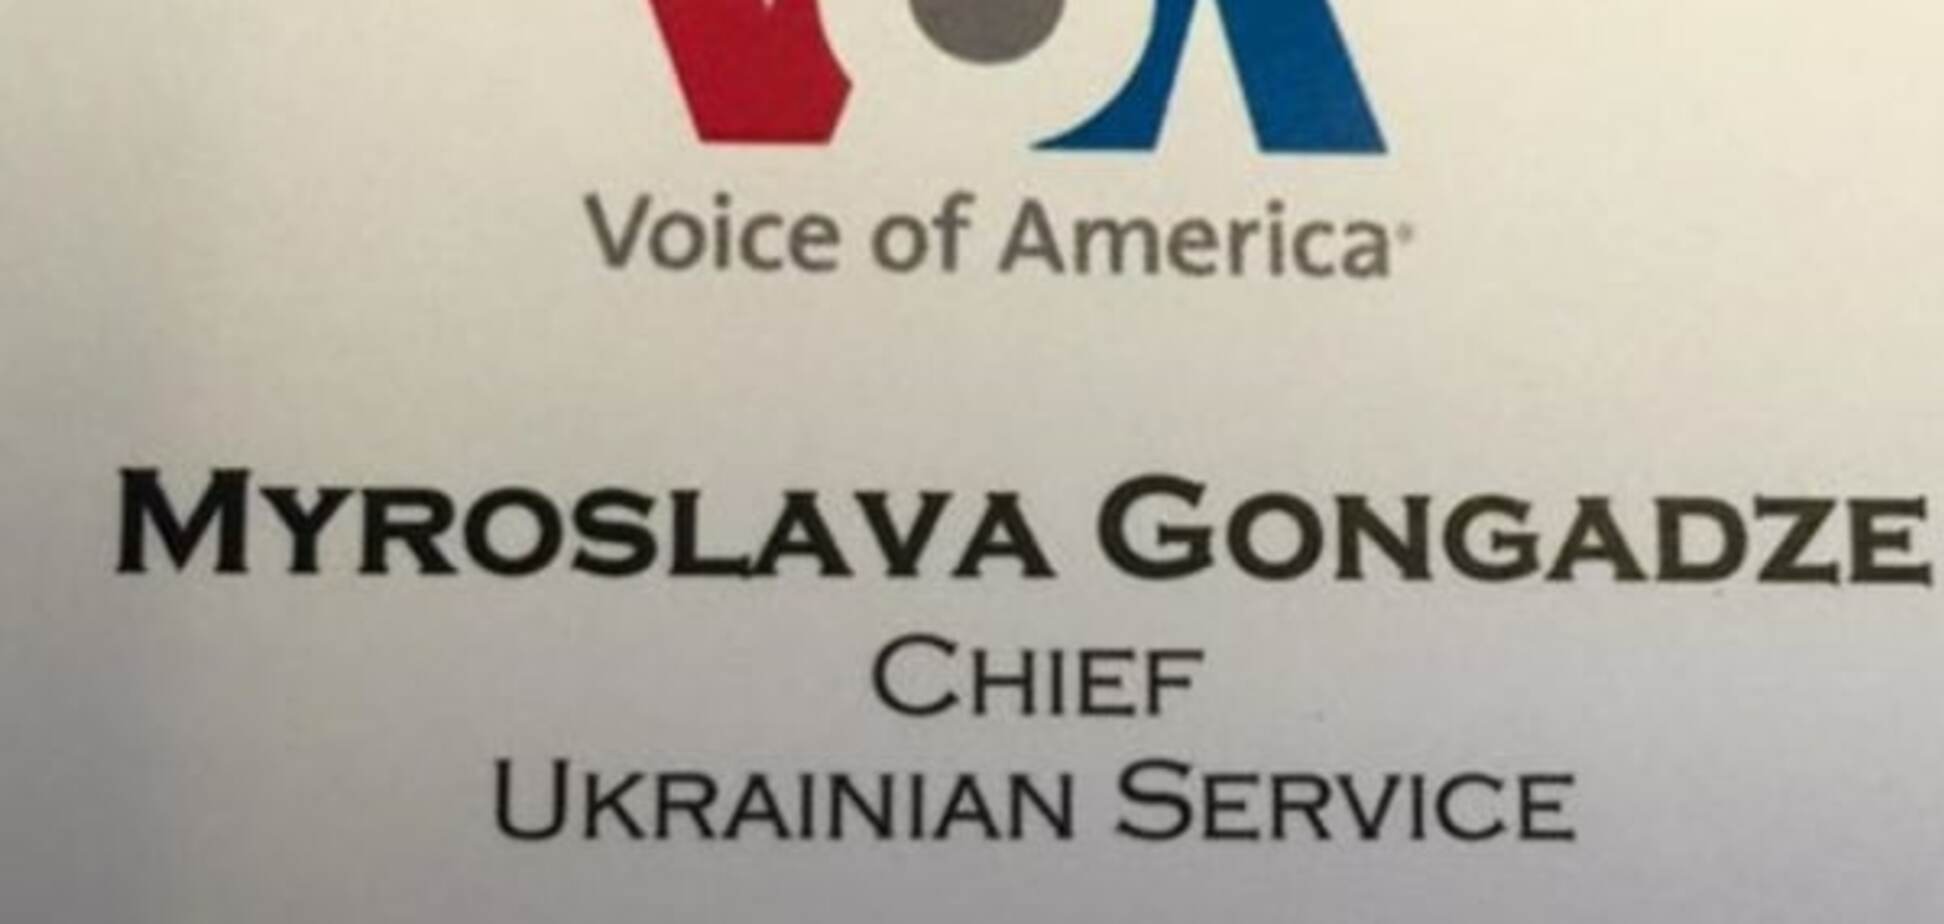 Гонгадзе возглавила 'Украинскую службу Голоса Америки'